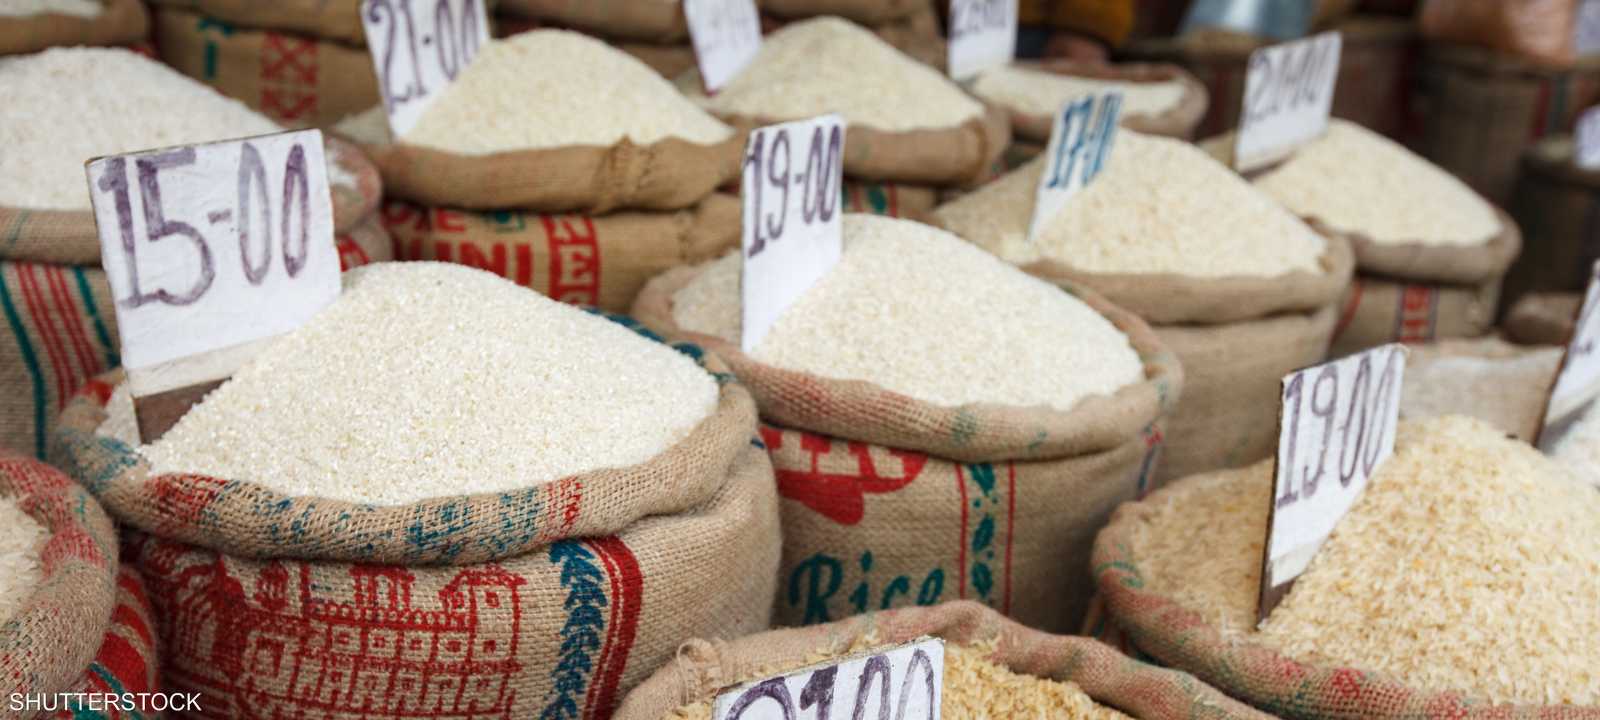 أسعار الأرز الهندي قد ترتفع بسبب توترات البحر الأحمر